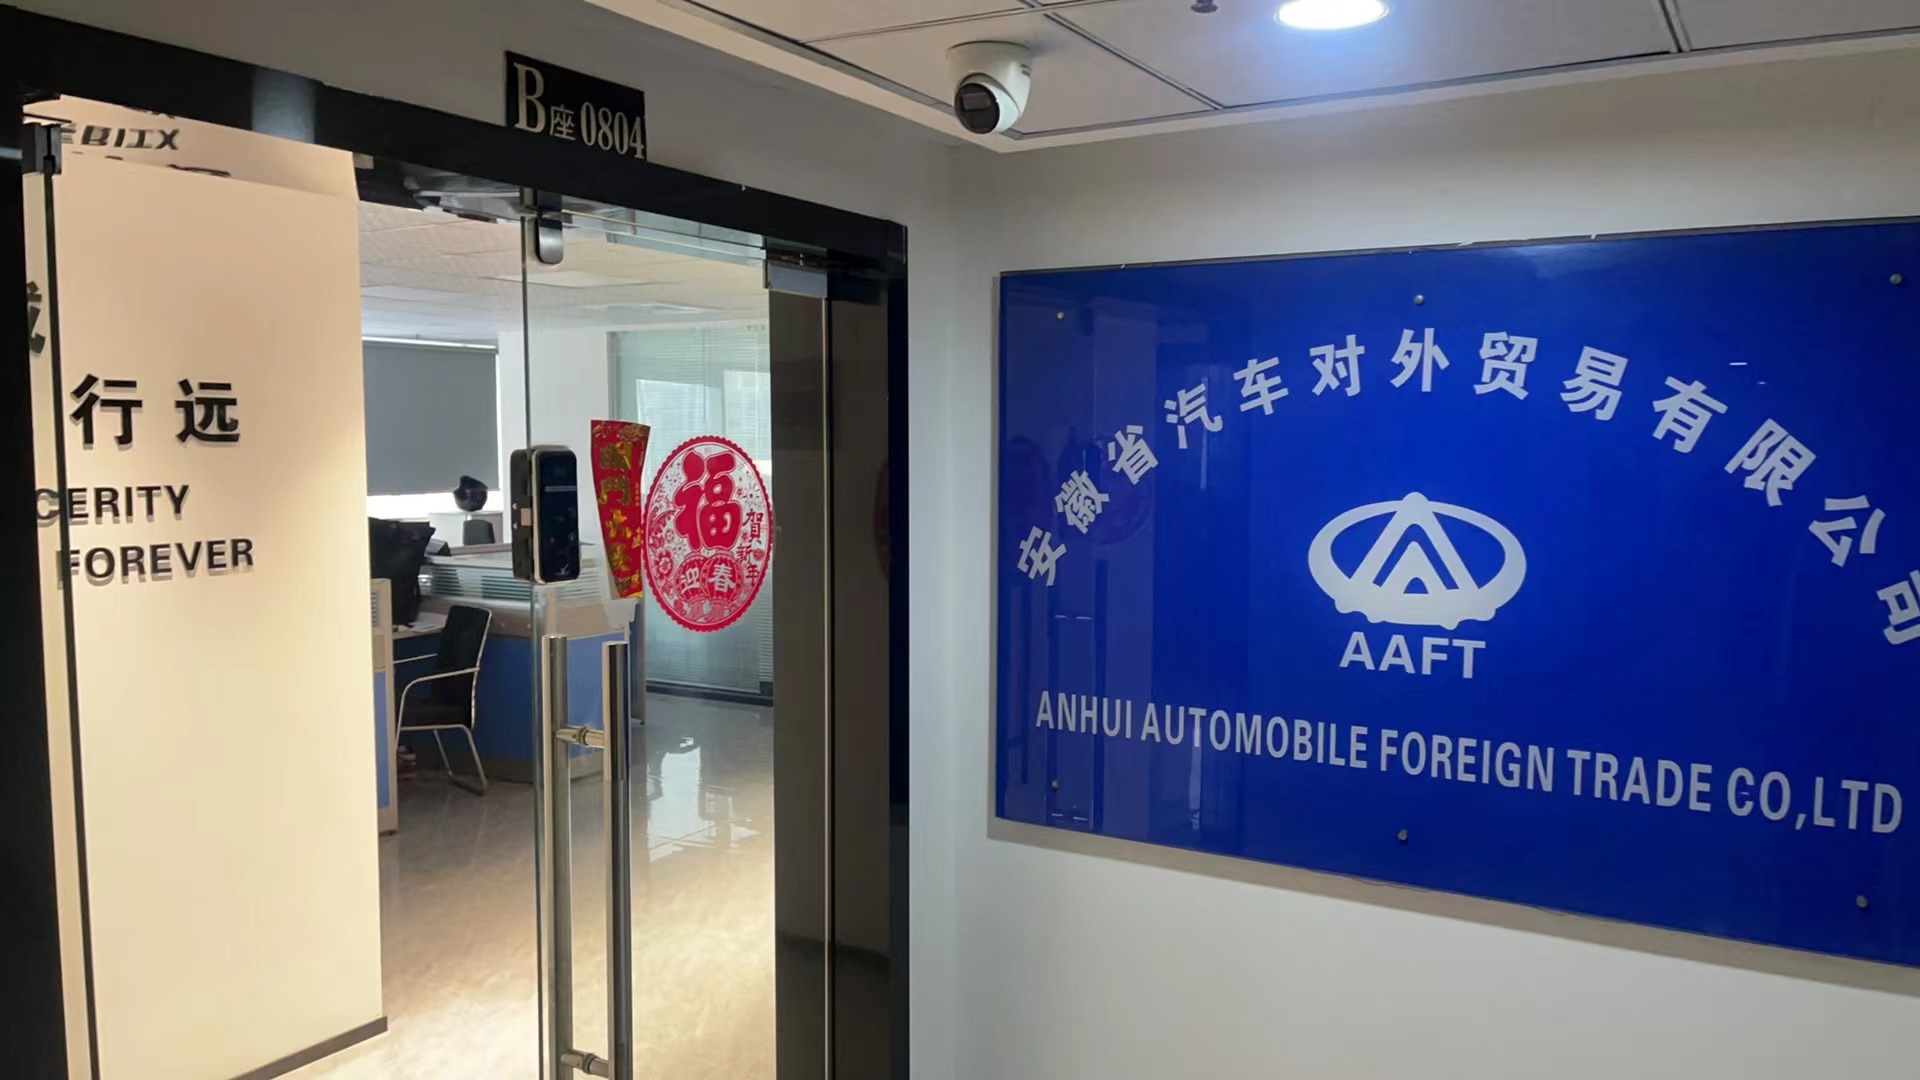 Anhui Automobile Foreign Trade Co.,Ltd.